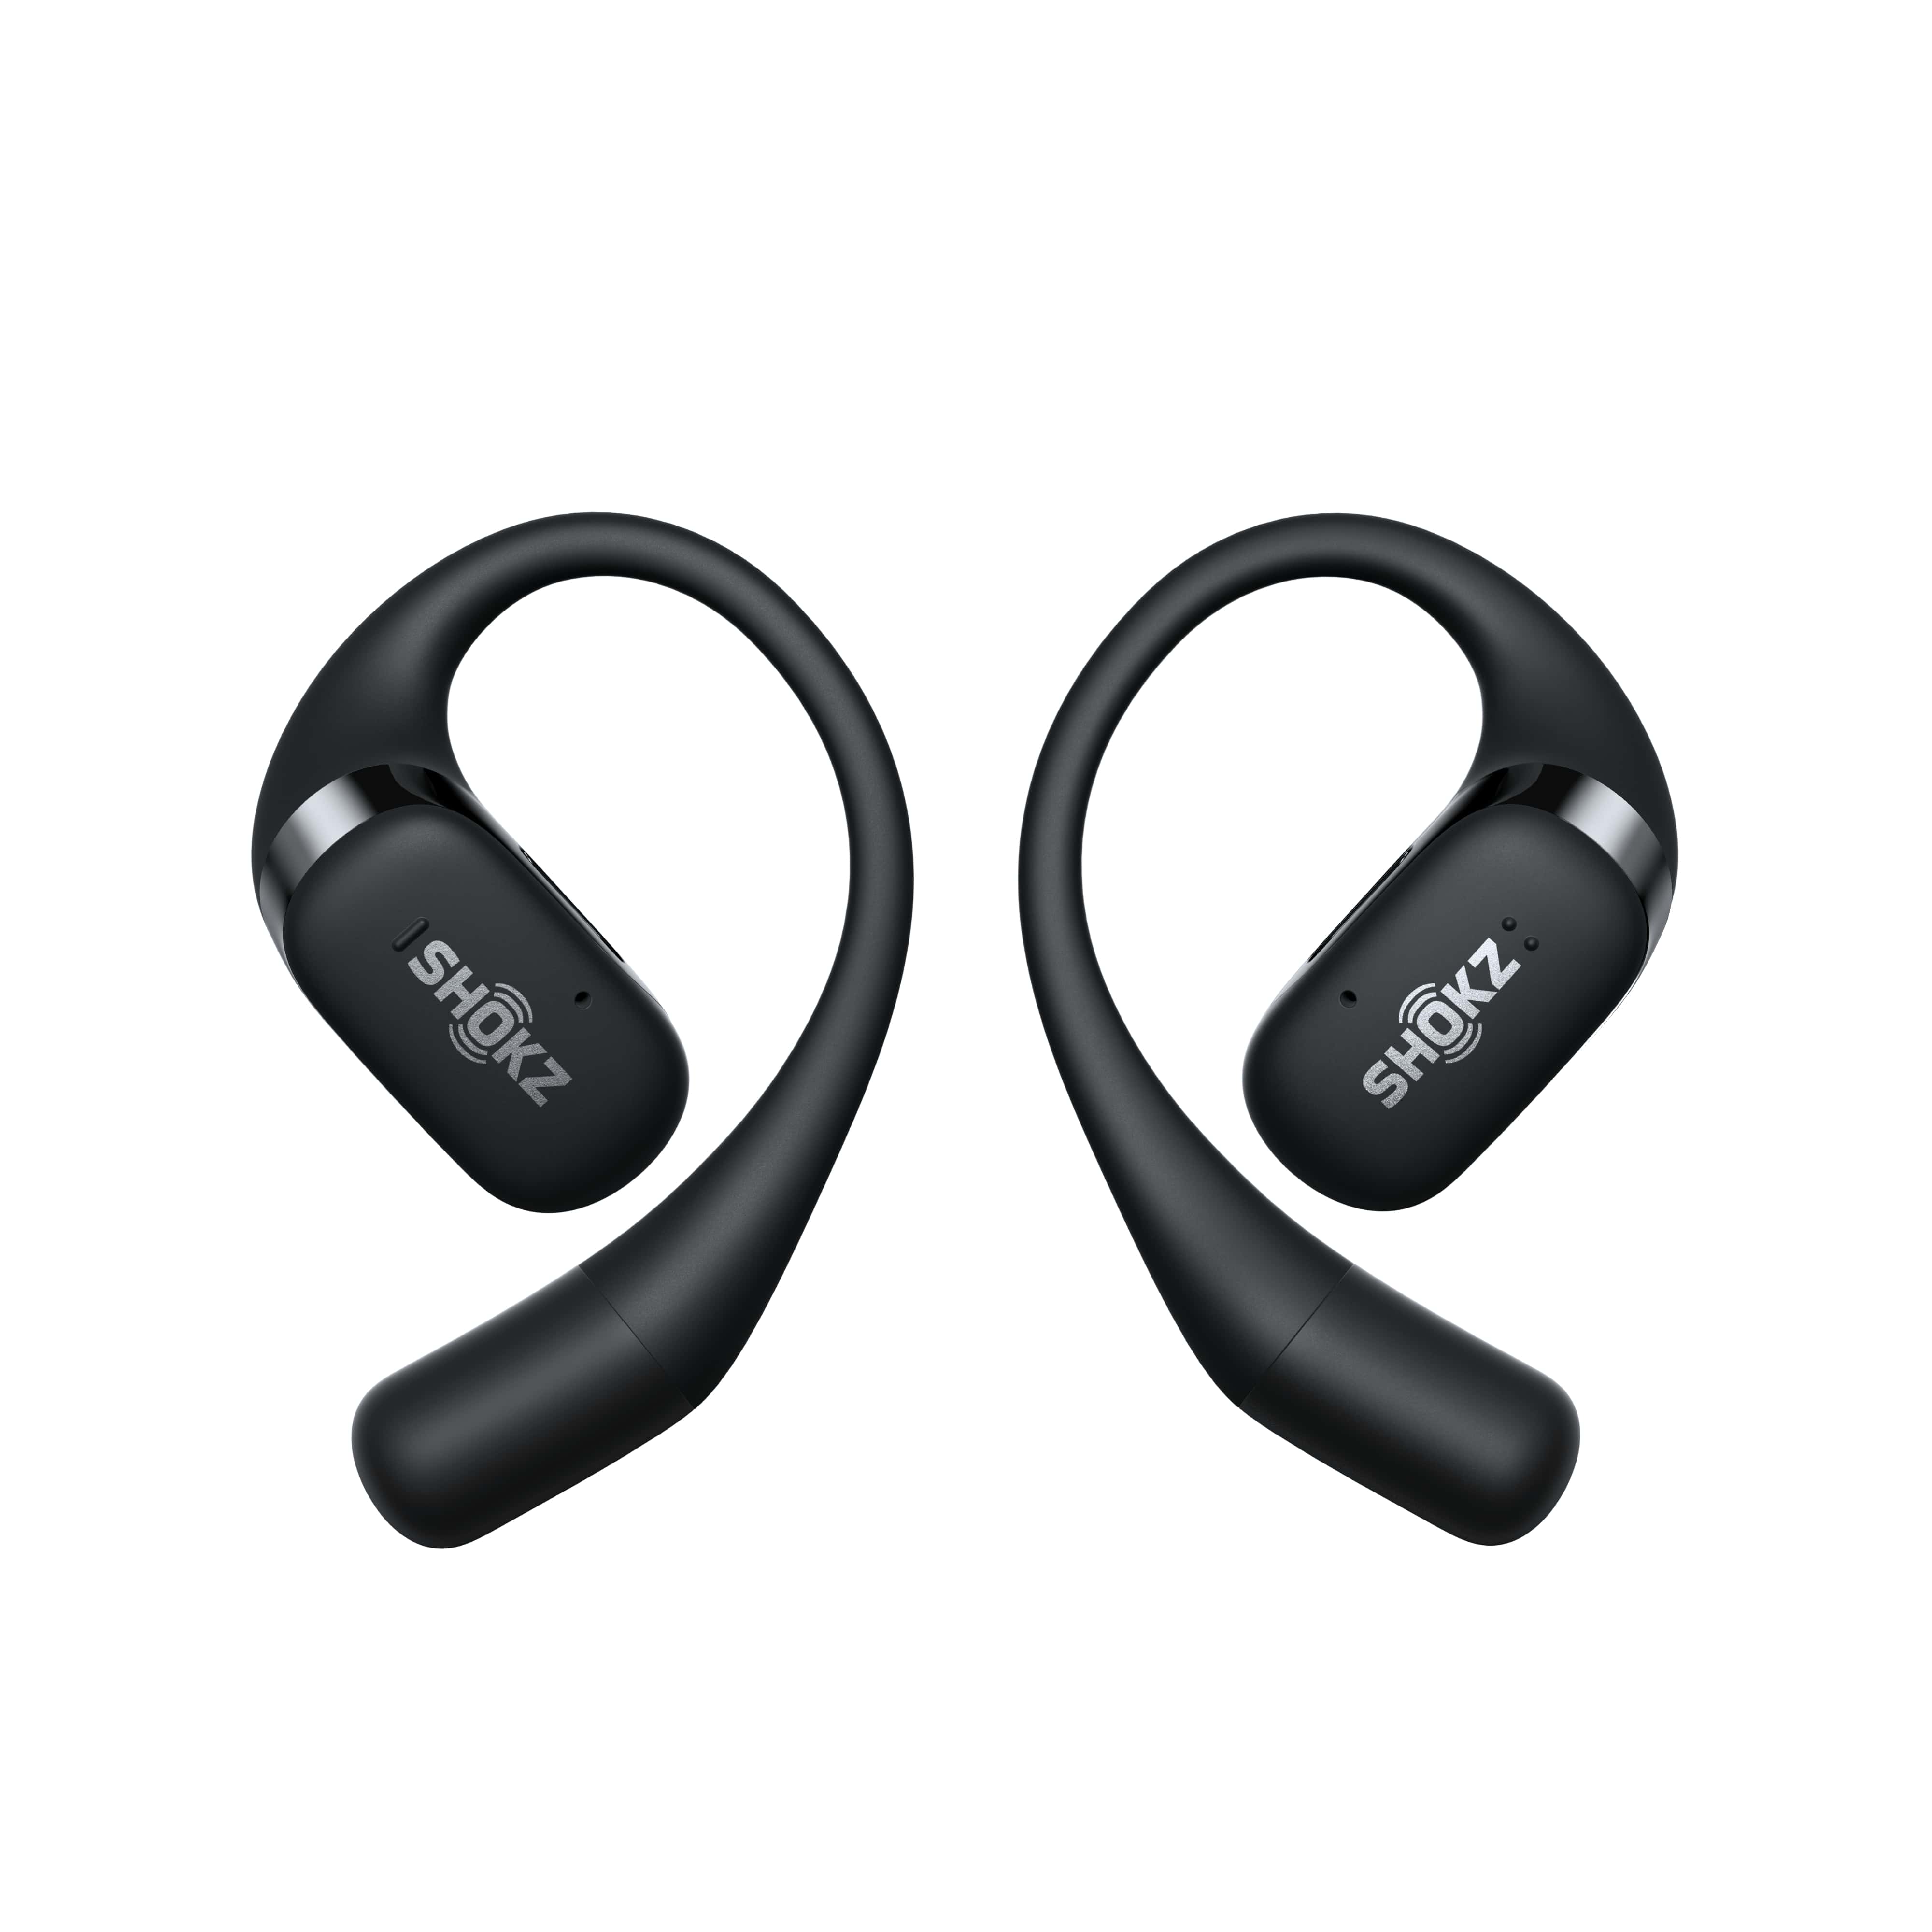 Tai nghe không nhét tai Bluetooth True Wireless Earbuds Shokz OpenFit - Màu đen - Thế Hệ Mới Nhất - Hàng Chính Hãng